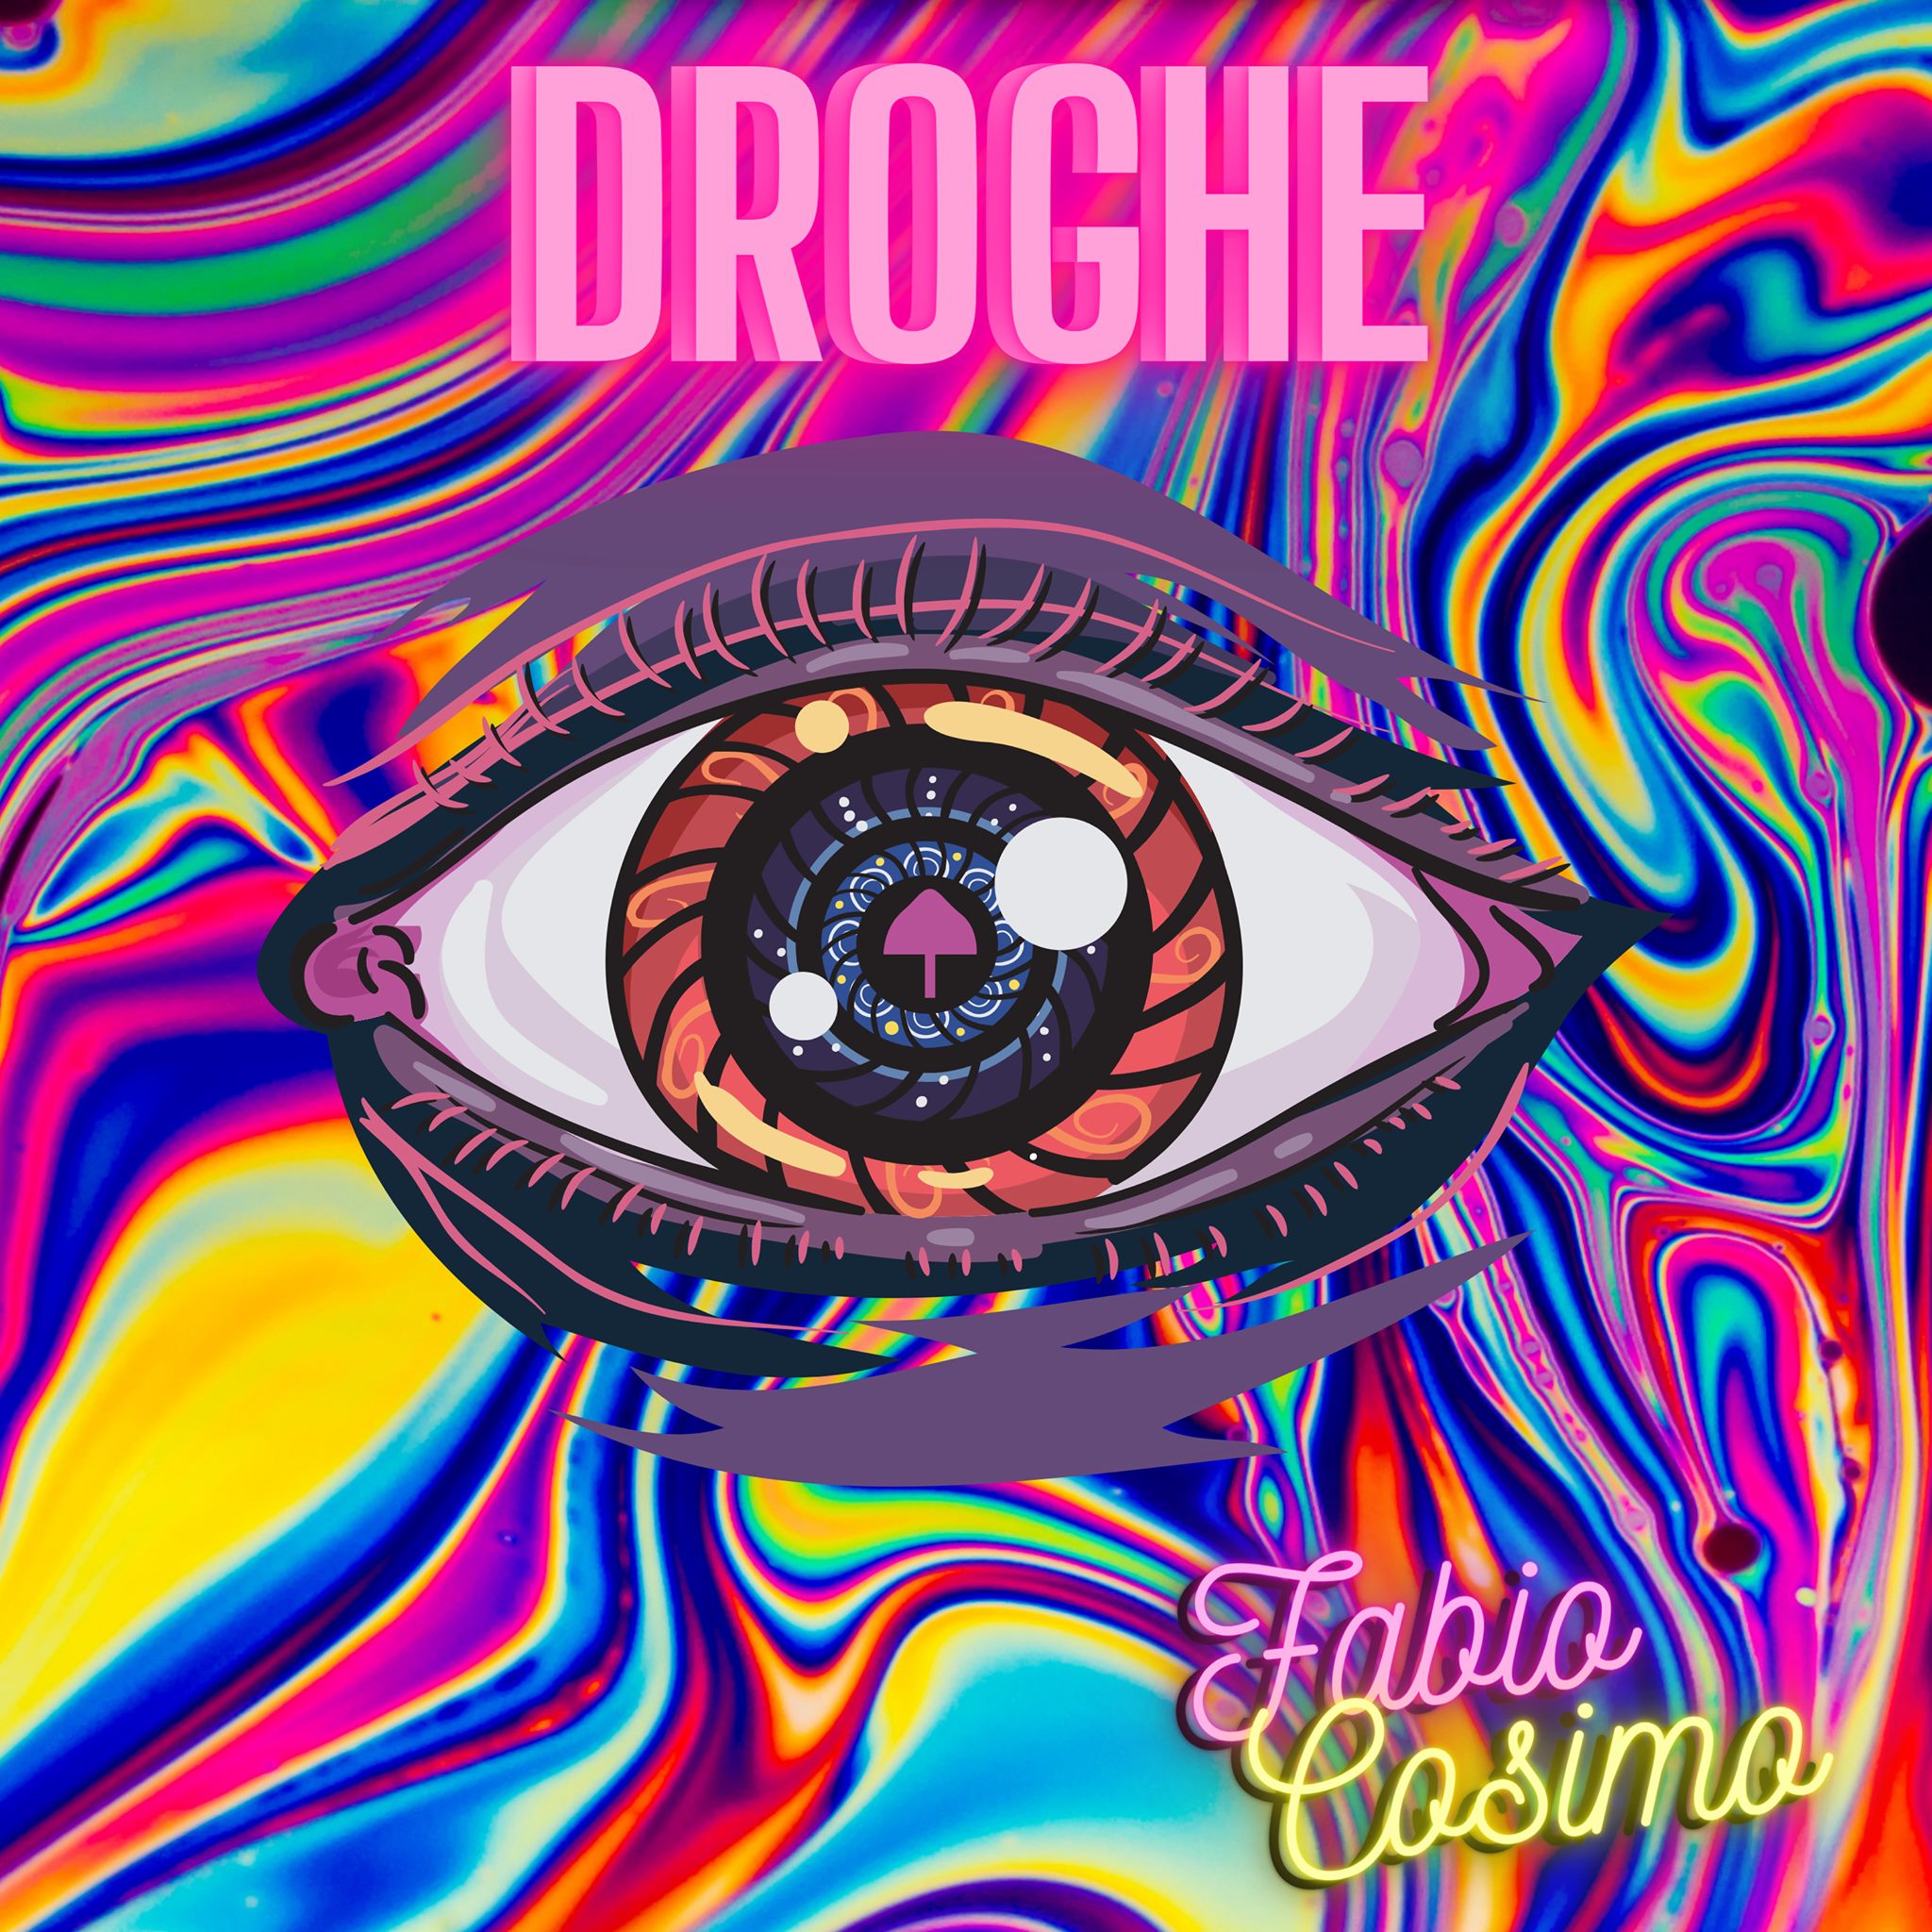 DROGHE, l'esordio electro/pop di Fabio Cosimo